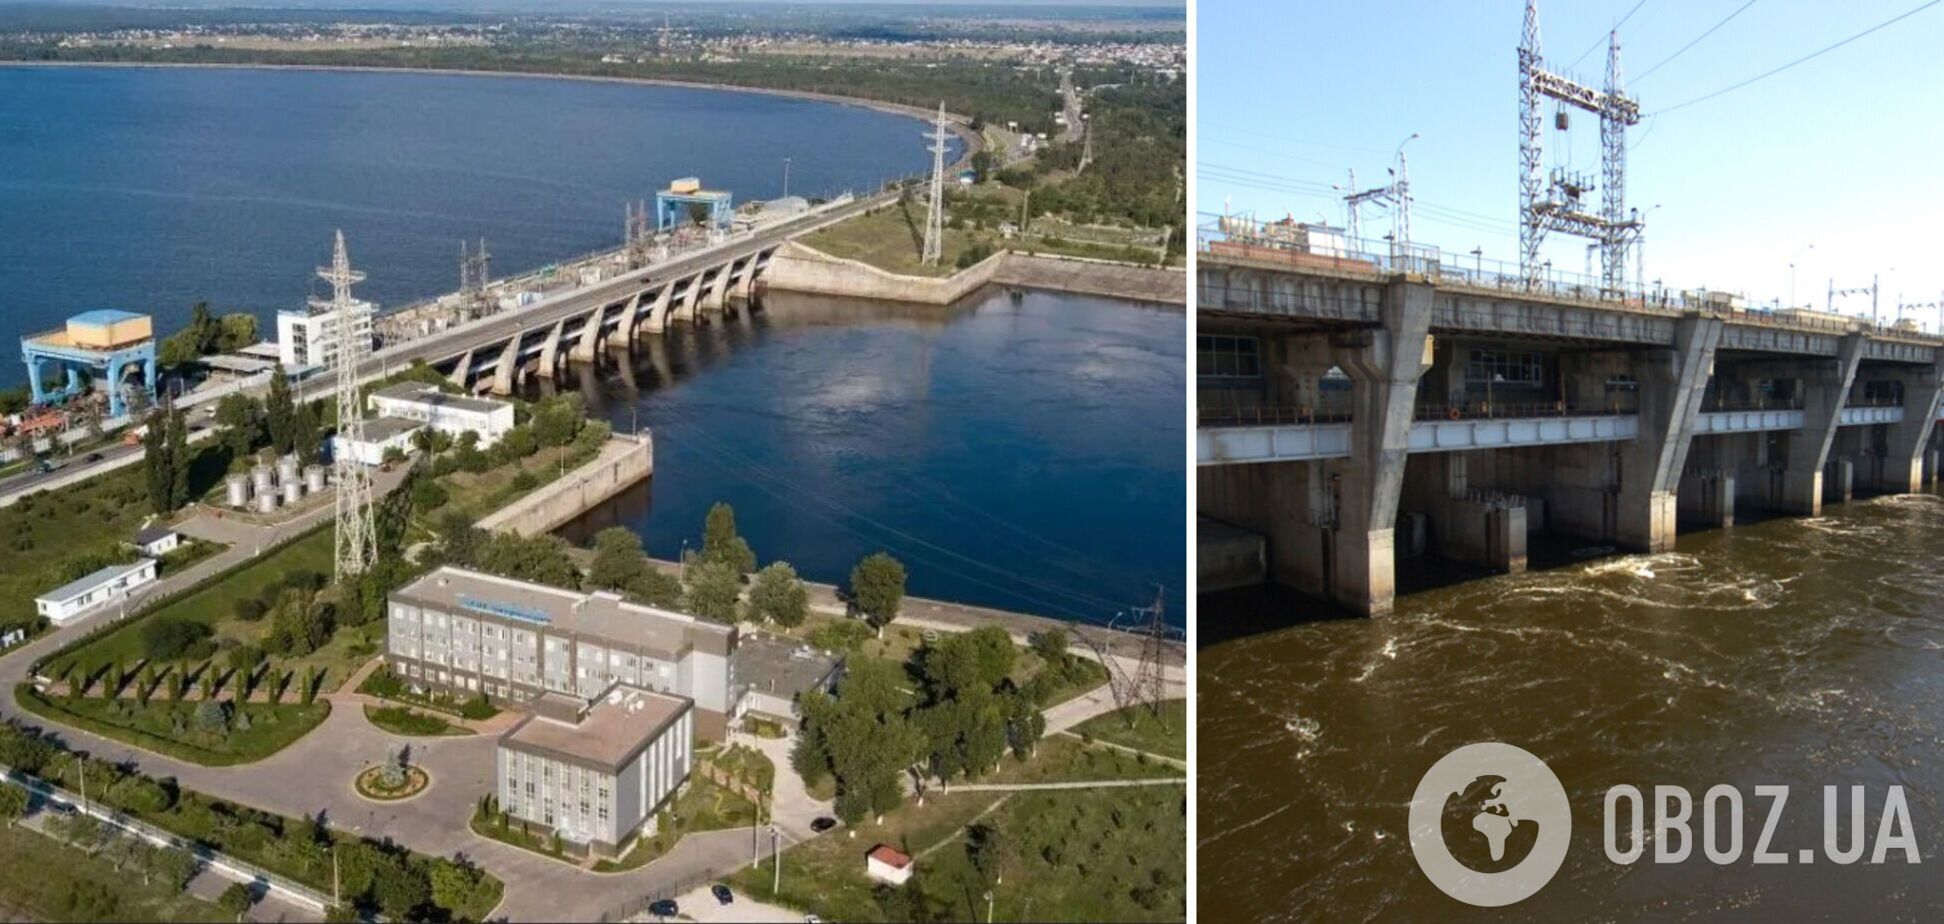 Массовая застройка элитными коттеджами дамбы Киевского моря грозит масштабным потопом, – экологи